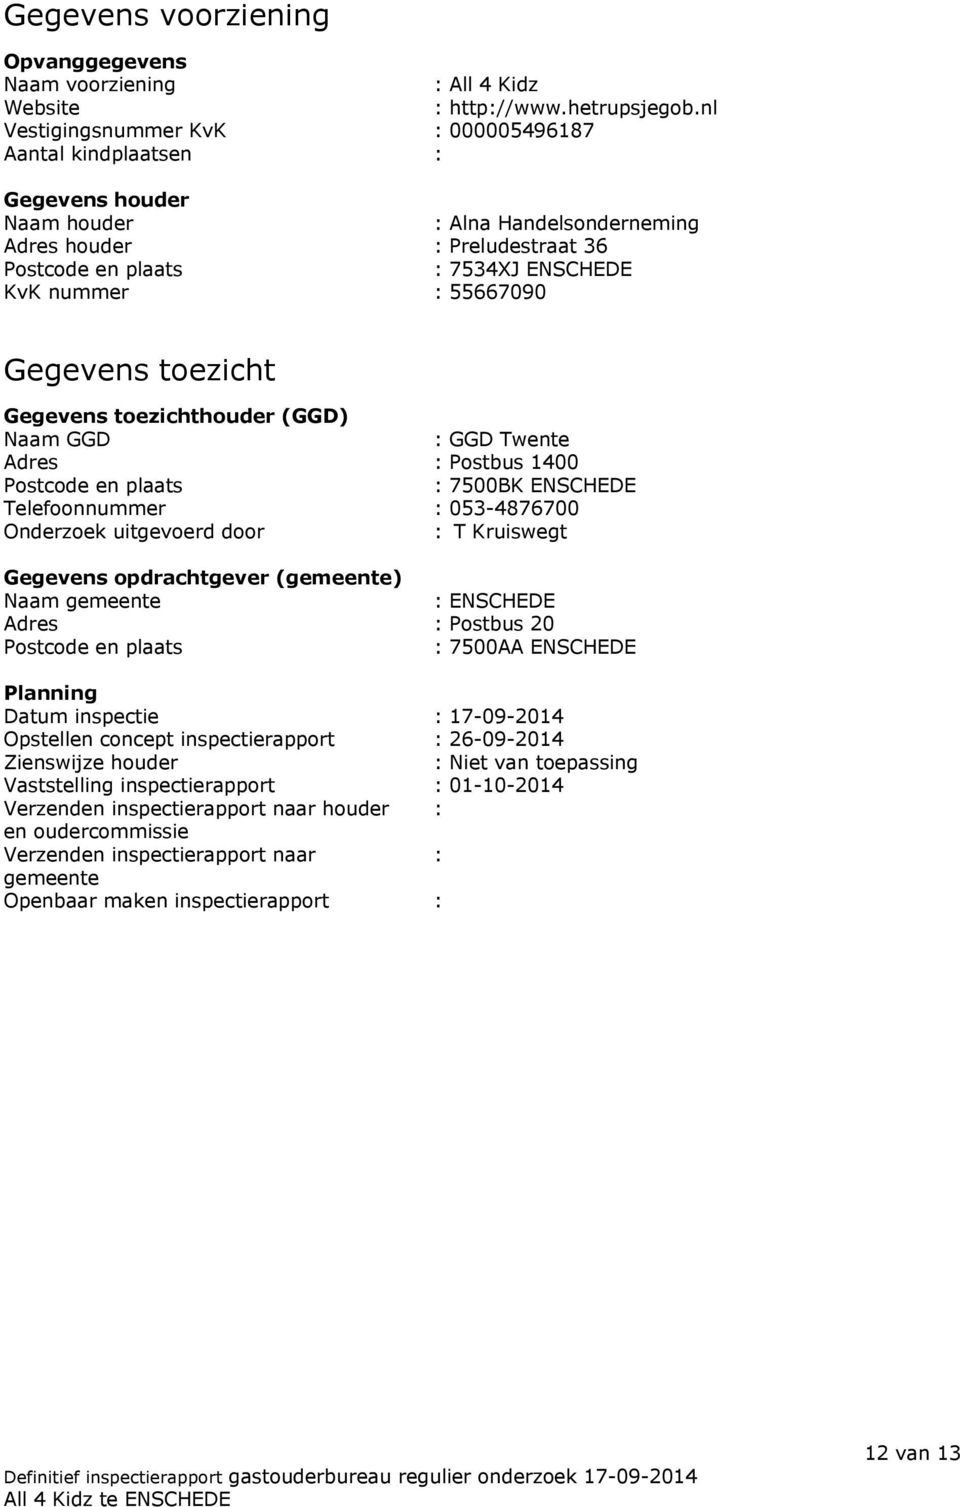 55667090 Gegevens toezicht Gegevens toezichthouder (GGD) Naam GGD : GGD Twente Adres : Postbus 1400 Postcode en plaats : 7500BK ENSCHEDE Telefoonnummer : 053-4876700 Onderzoek uitgevoerd door : T